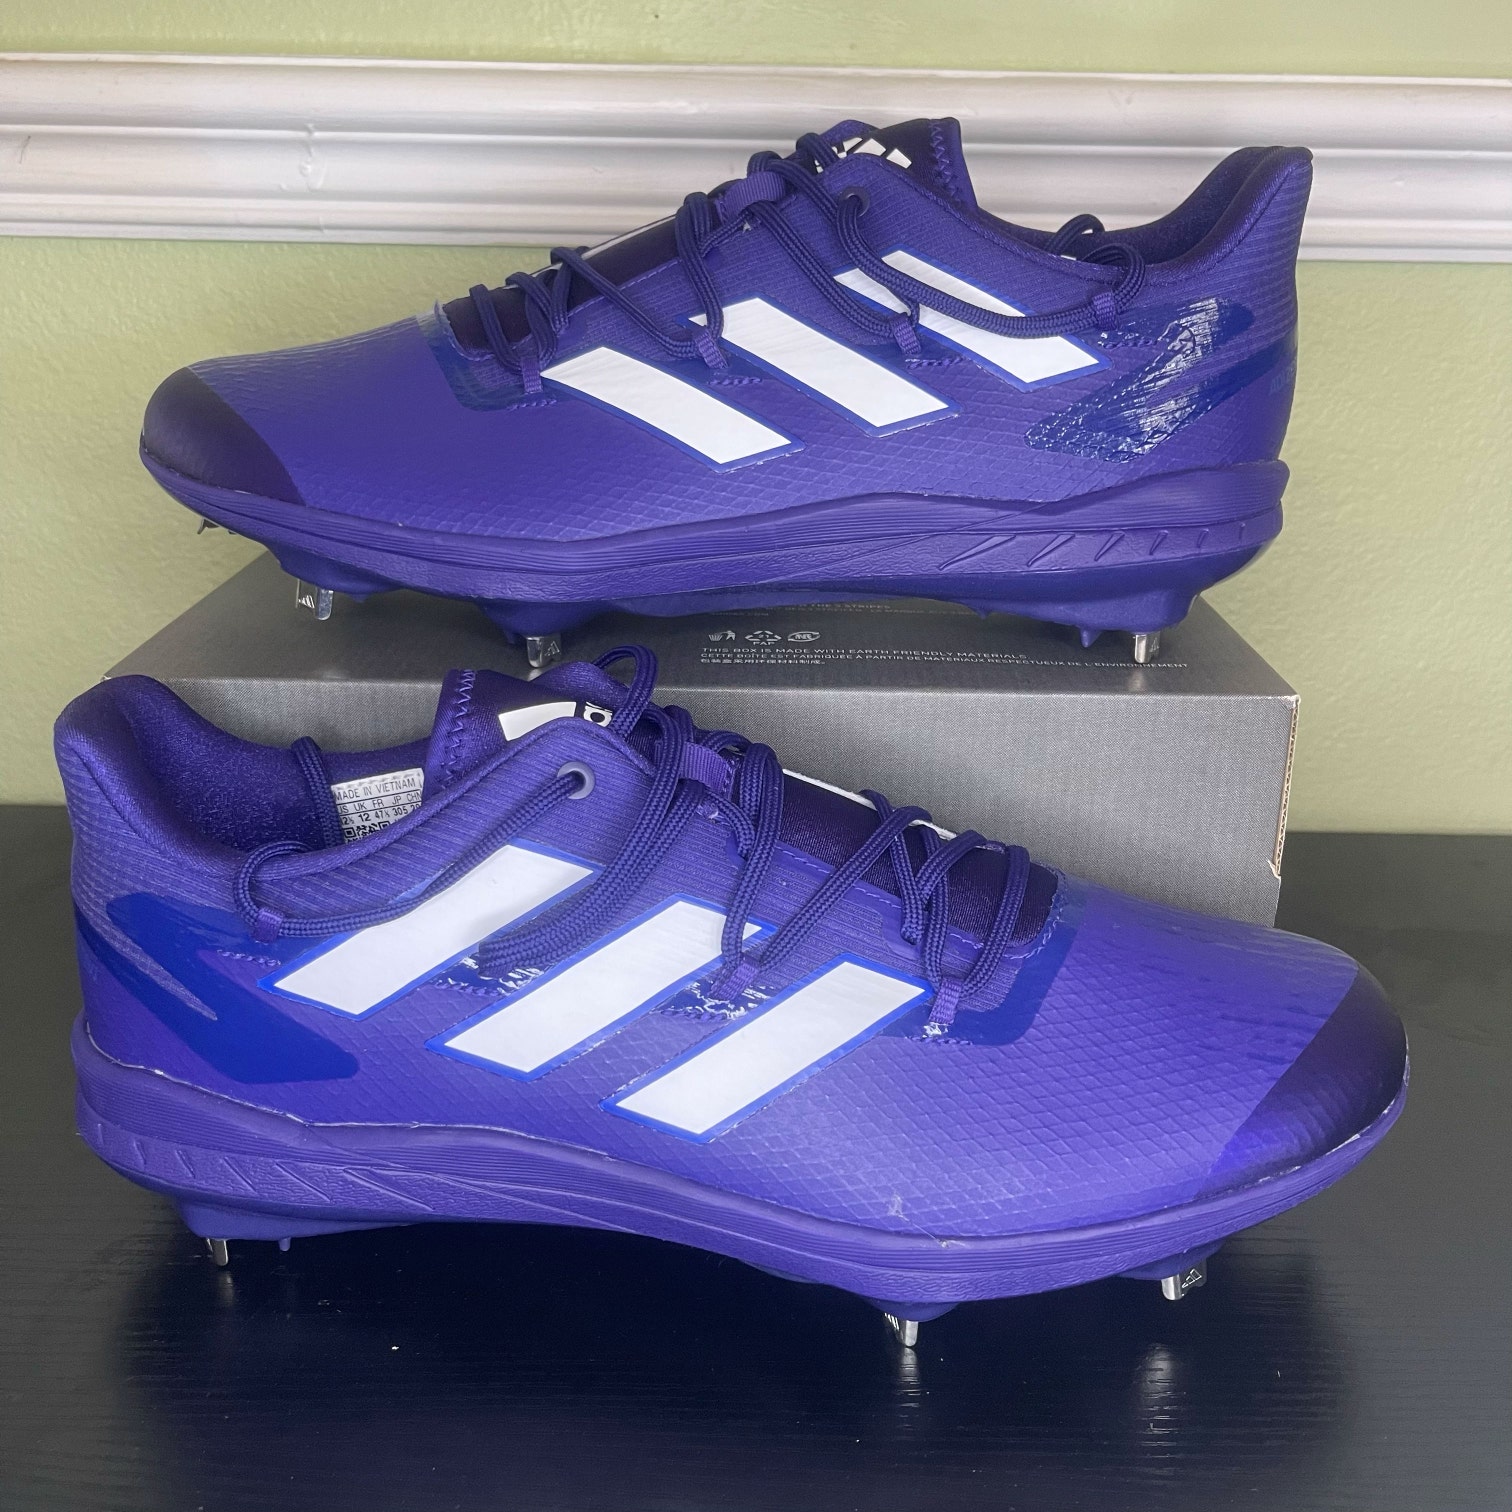 Adidas Adizero Afterburner 8 Metal Baseball Cleats Size 13 Purple White H00980